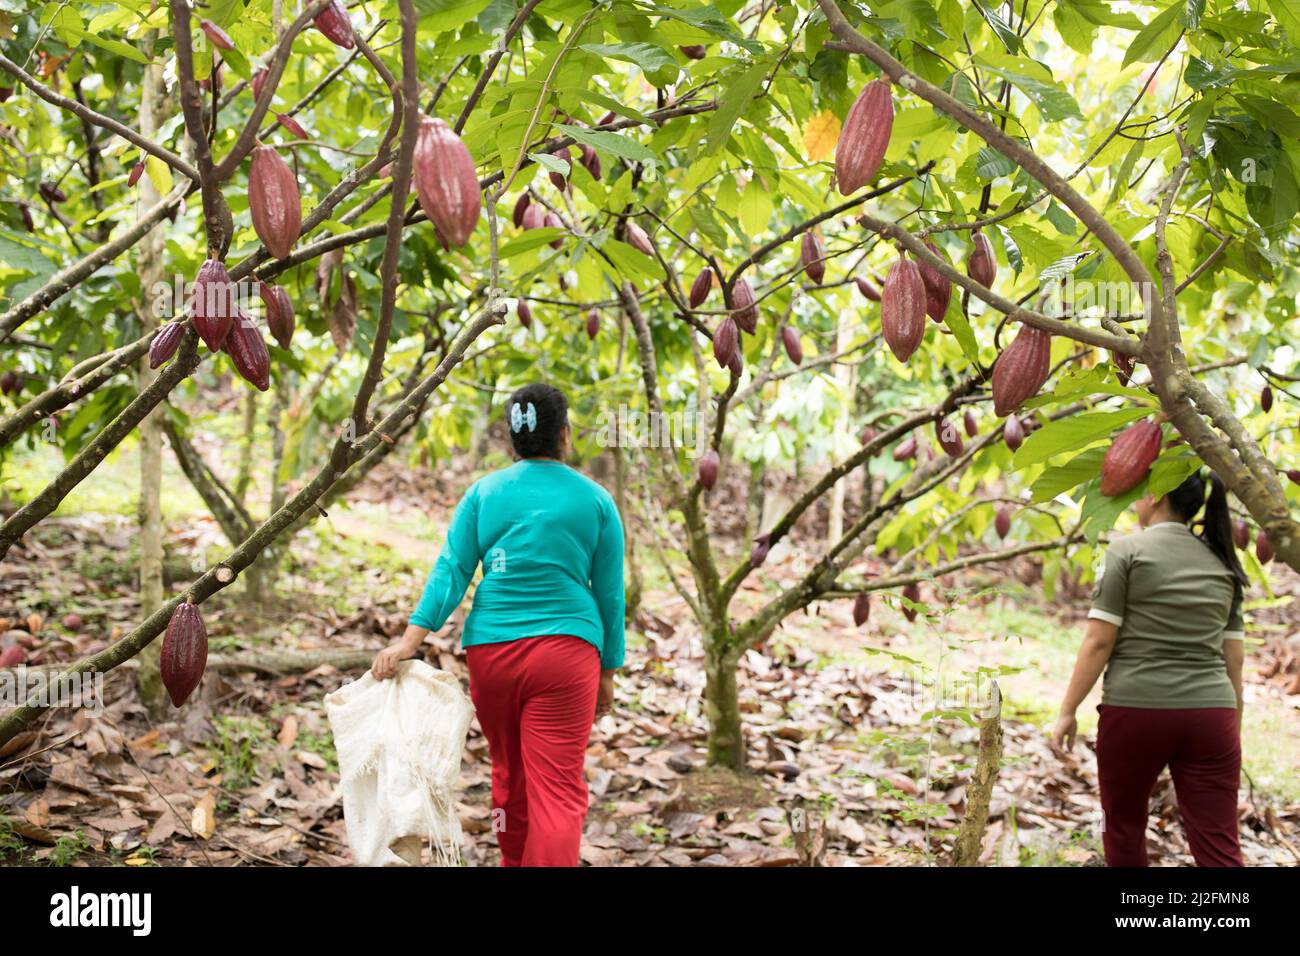 Bauern ernten Kakaoschoten von den Bäumen einer Kakaoplantage in Mamuju Regency, Sulawesi Island, Indonesien, Asien. Stockfoto